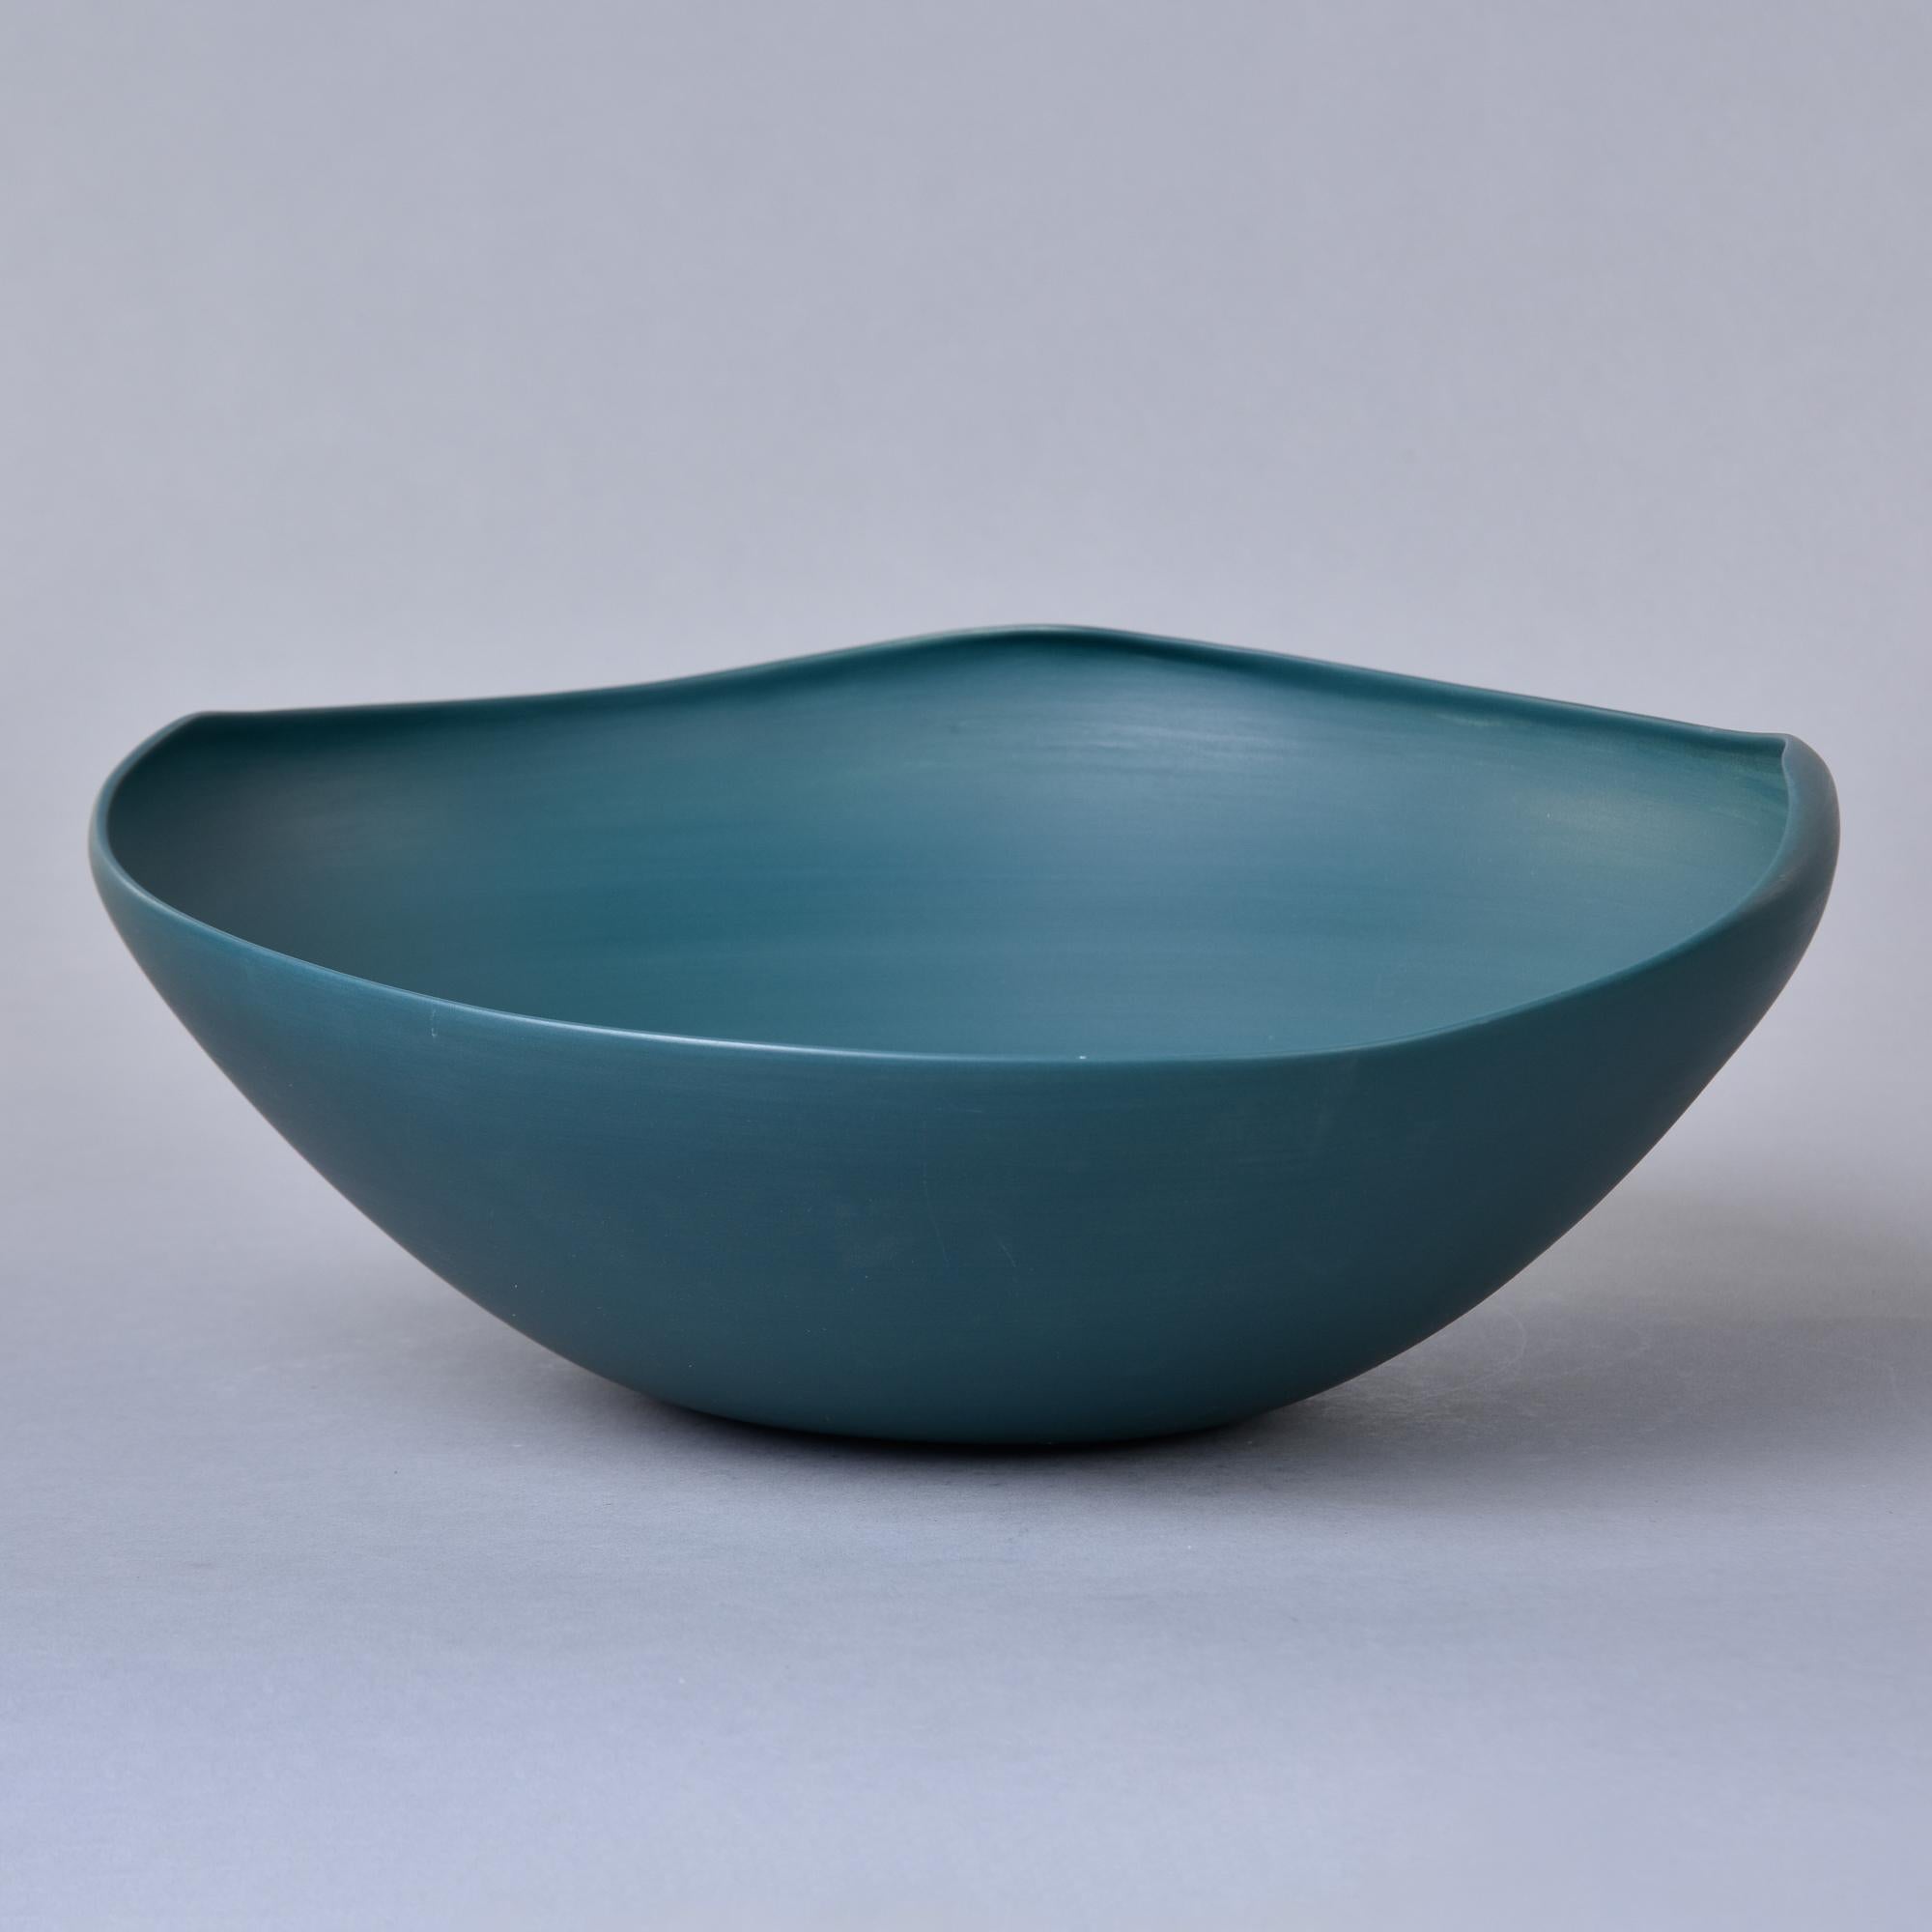 Diese neue, aus Italien importierte Keramikschale von Rina Menardi ist eine dünnwandige Keramikschale mit einem unregelmäßigen Rand und einer satten, blaugrünen Glasur. Auf der Unterseite des Sockels befindet sich eine Herstellermarke. Neu und ohne